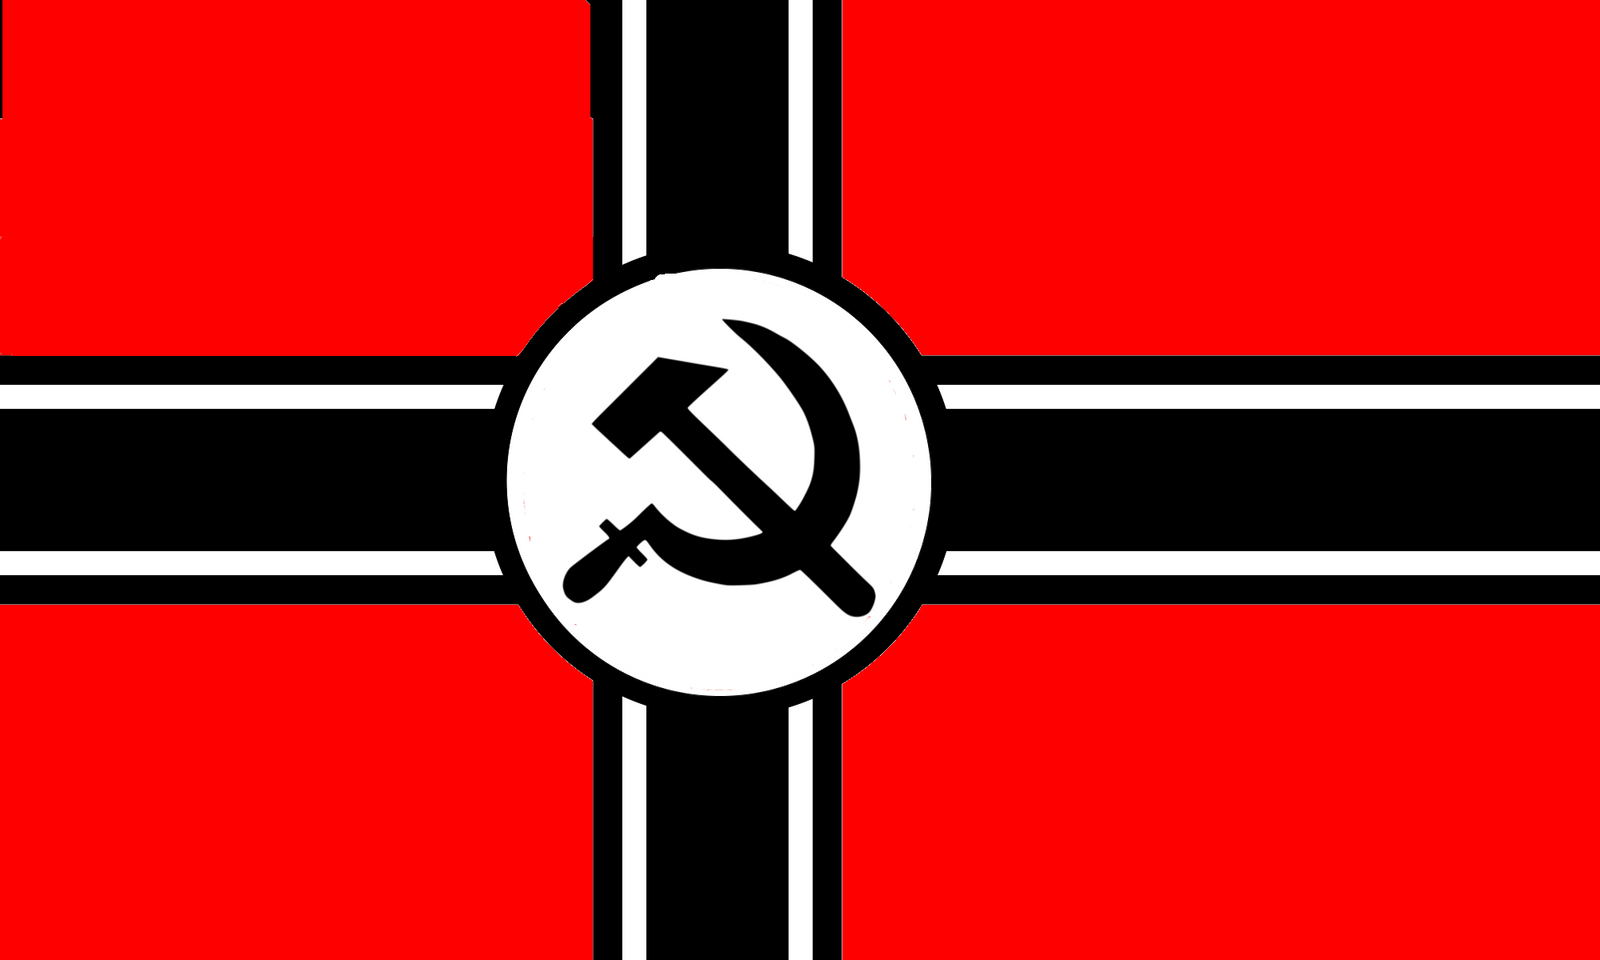 National Bolshevik Variant flag by ShitAllOverHumanity on DeviantArt